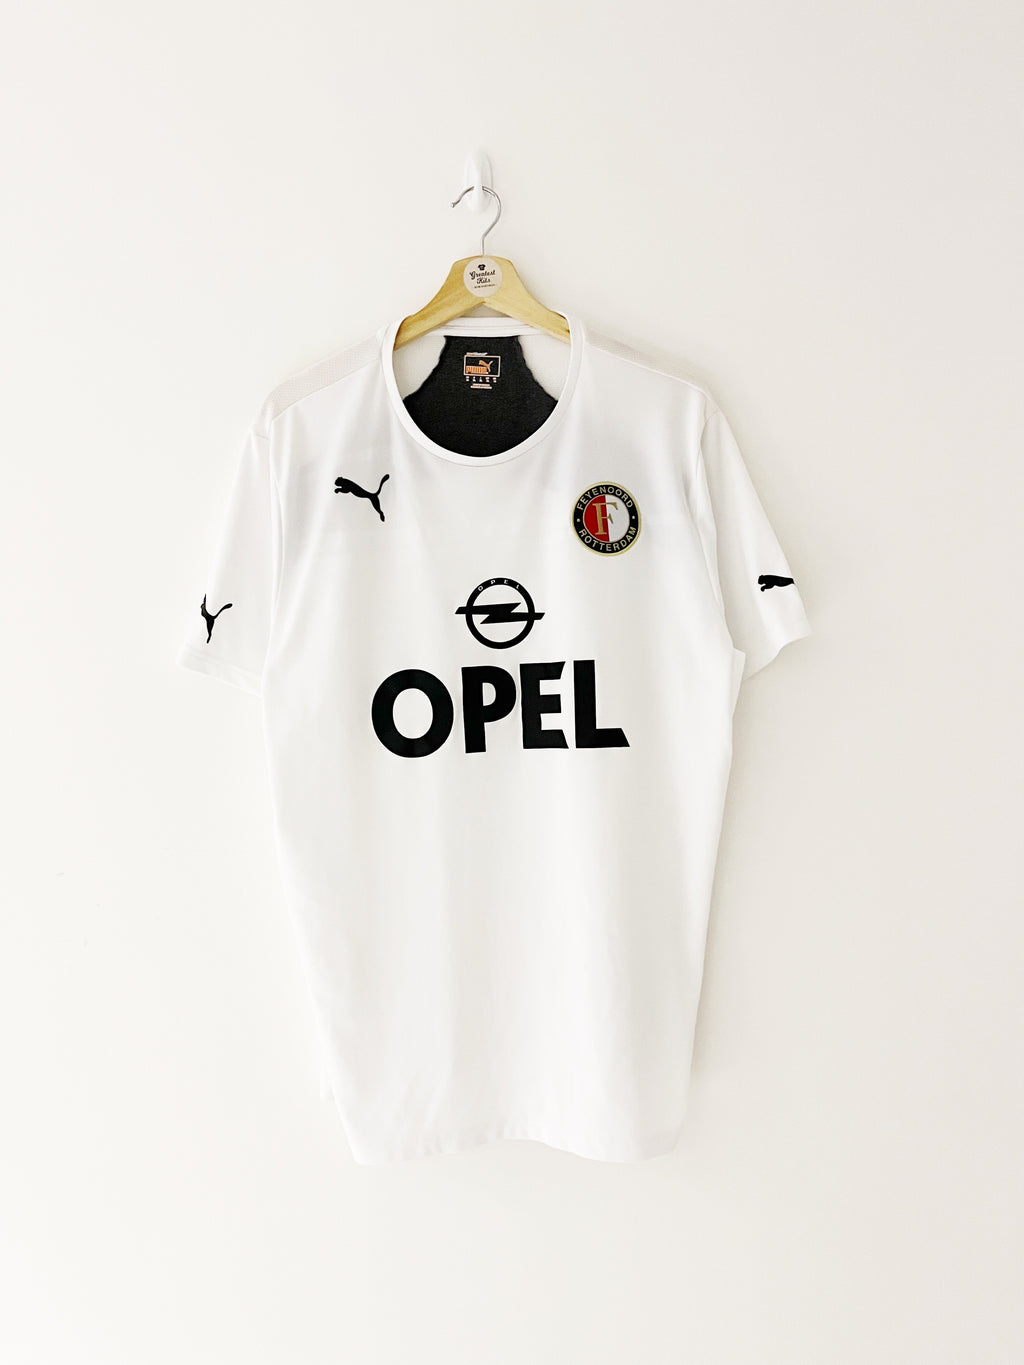 Maillot d'entraînement Feyenoord 2013/14 (XL) 9/10